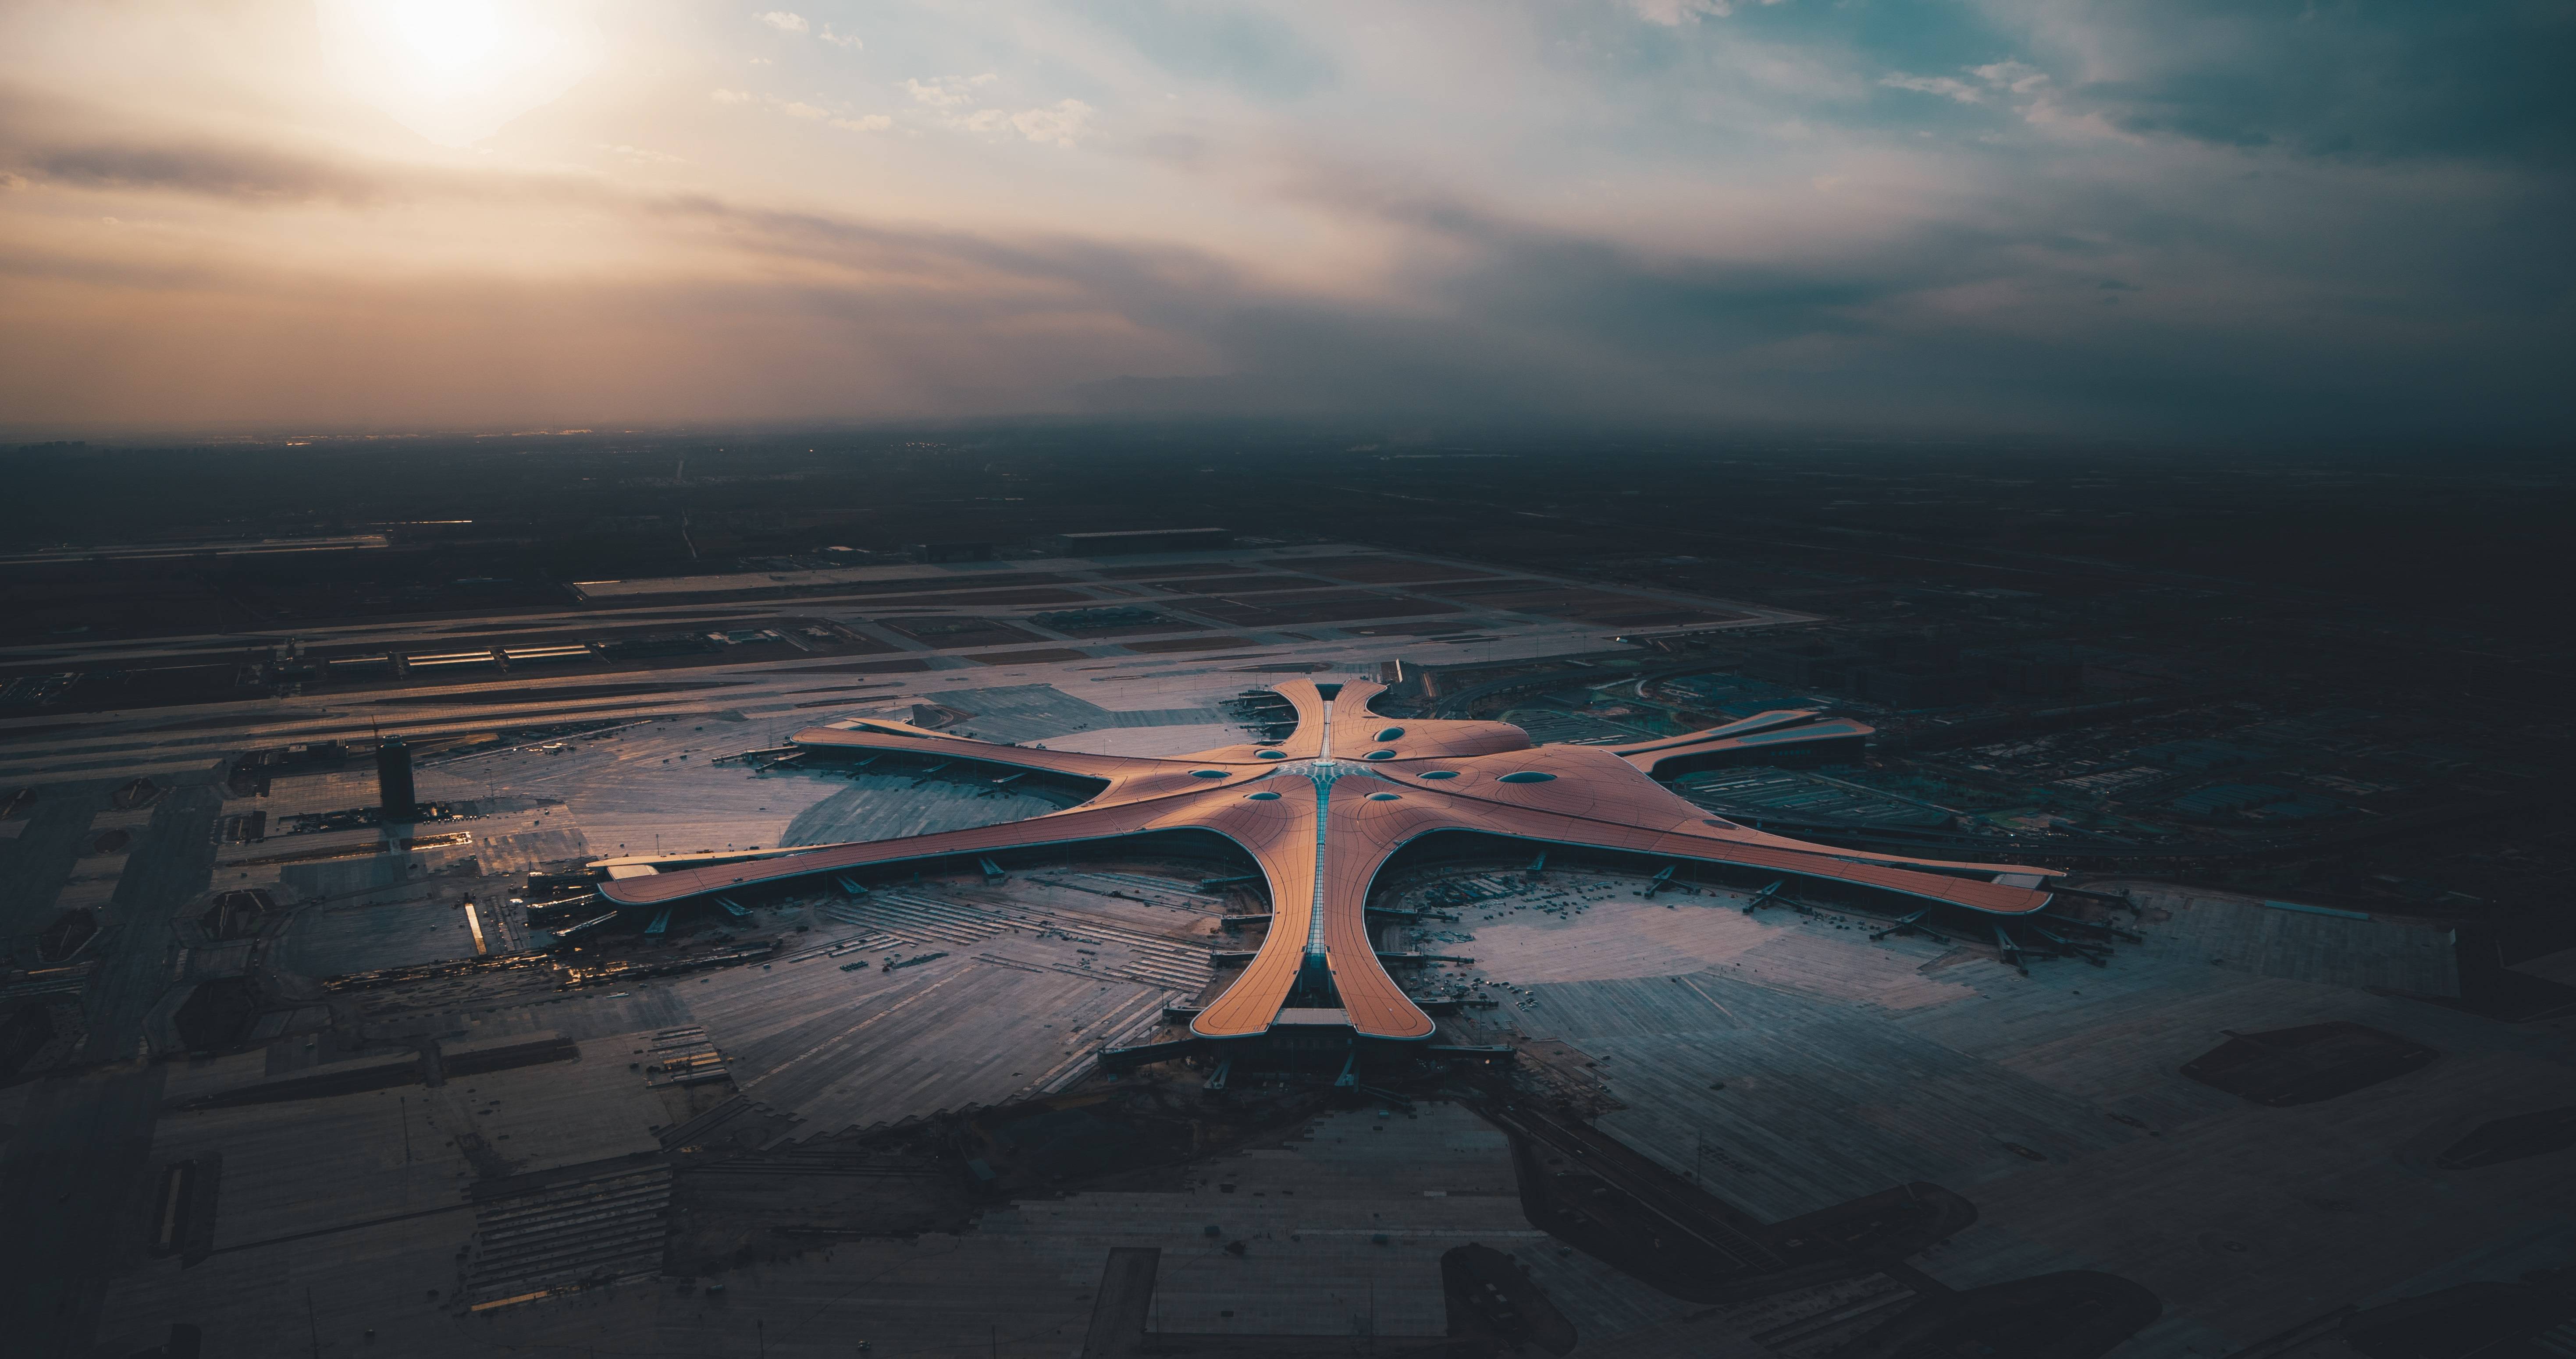 北京新机场9条跑道图片